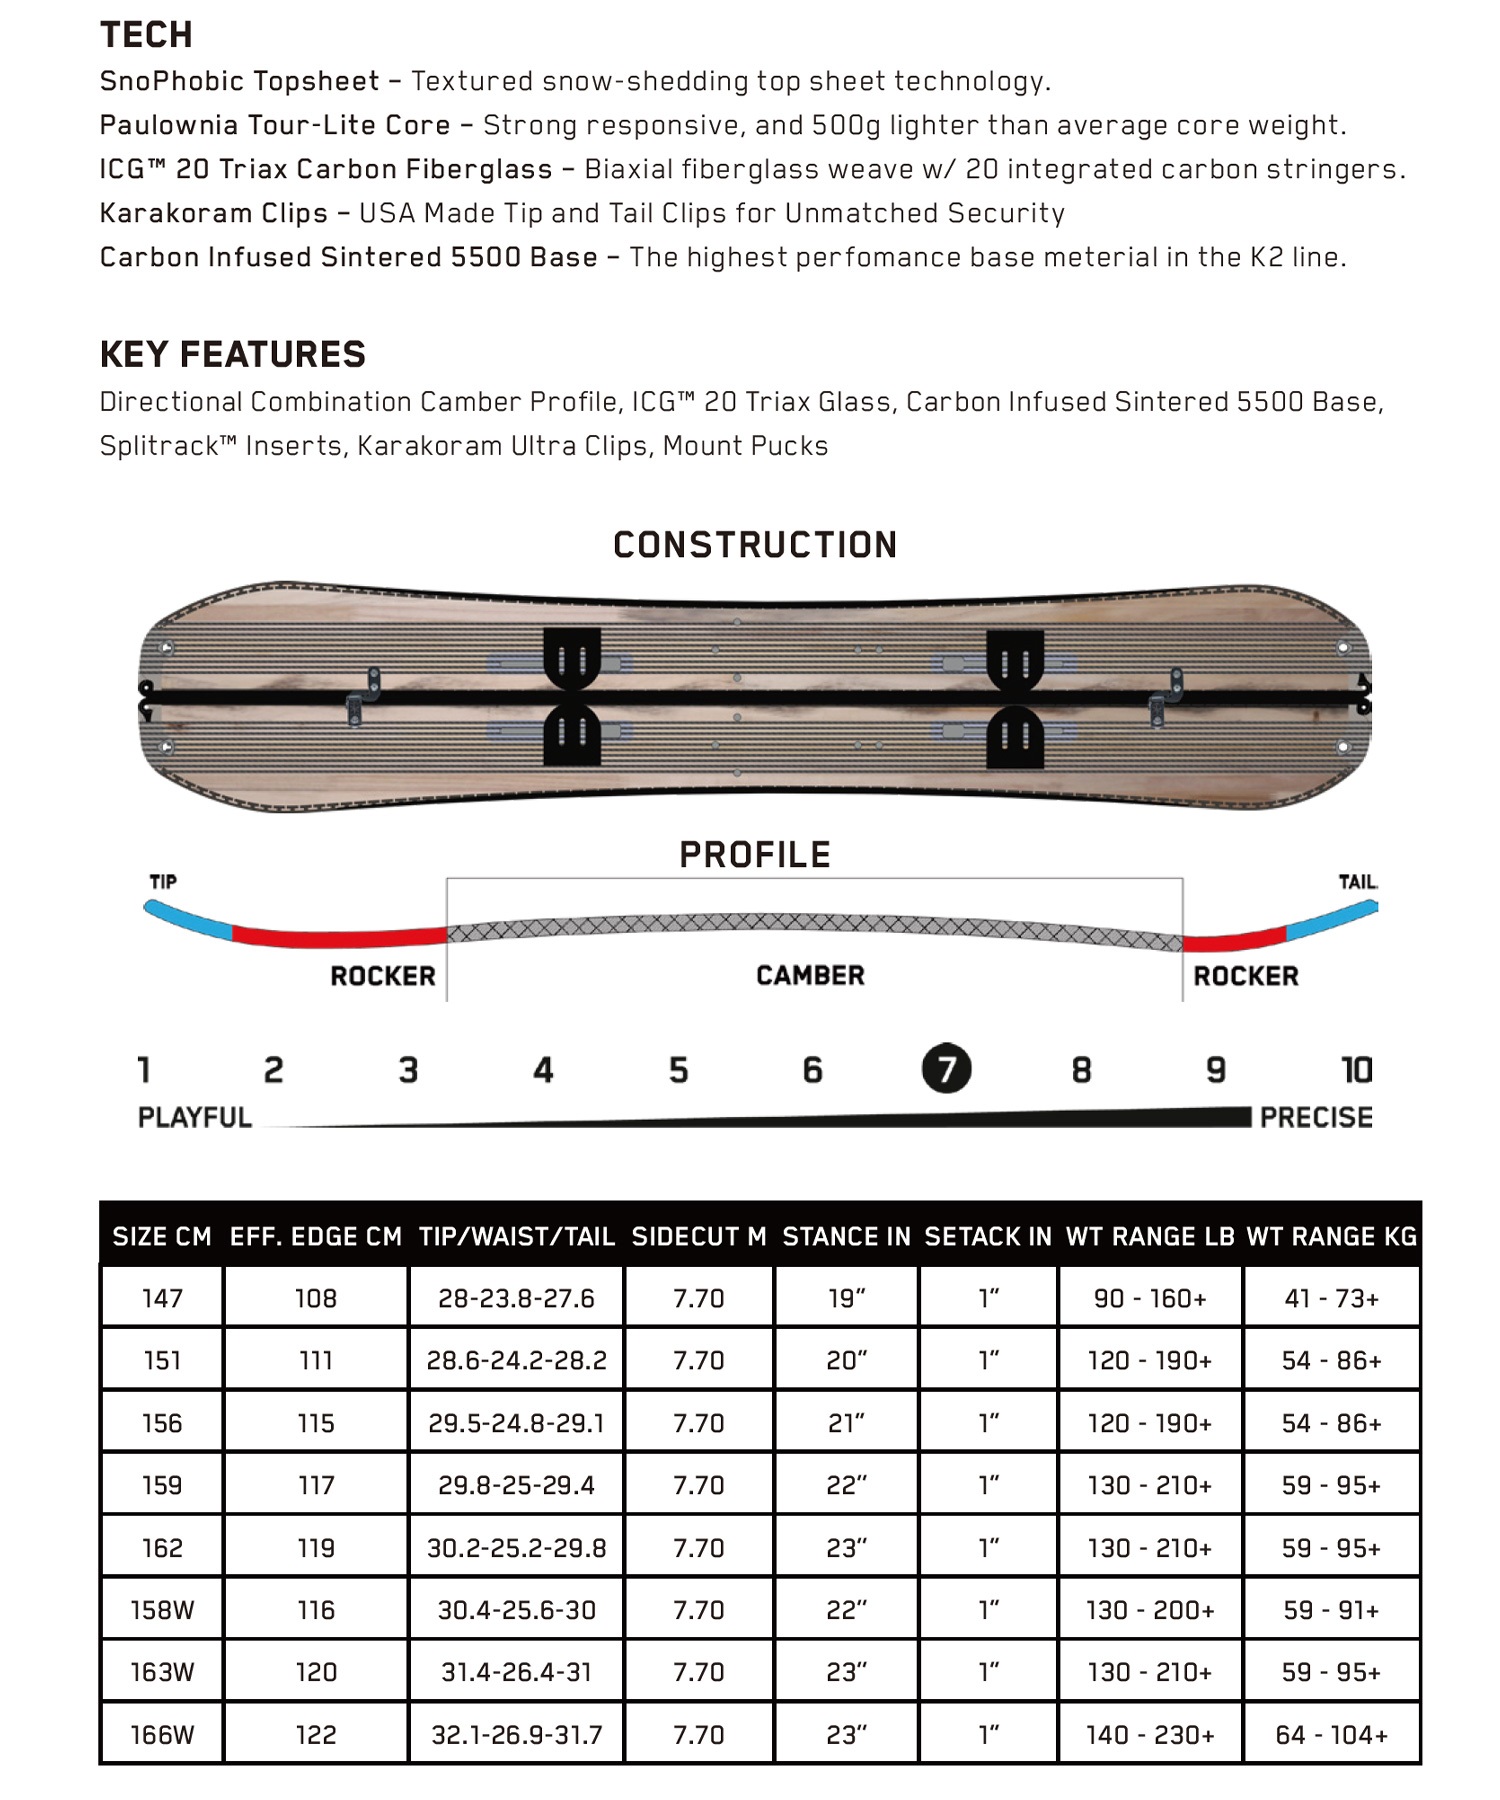 【早期購入】K2 ケーツー スノーボード 板 メンズ スプリットボード FREELOADER ムラサキスポーツ 24-25モデル LL B8(ONECOLOR-151cm)